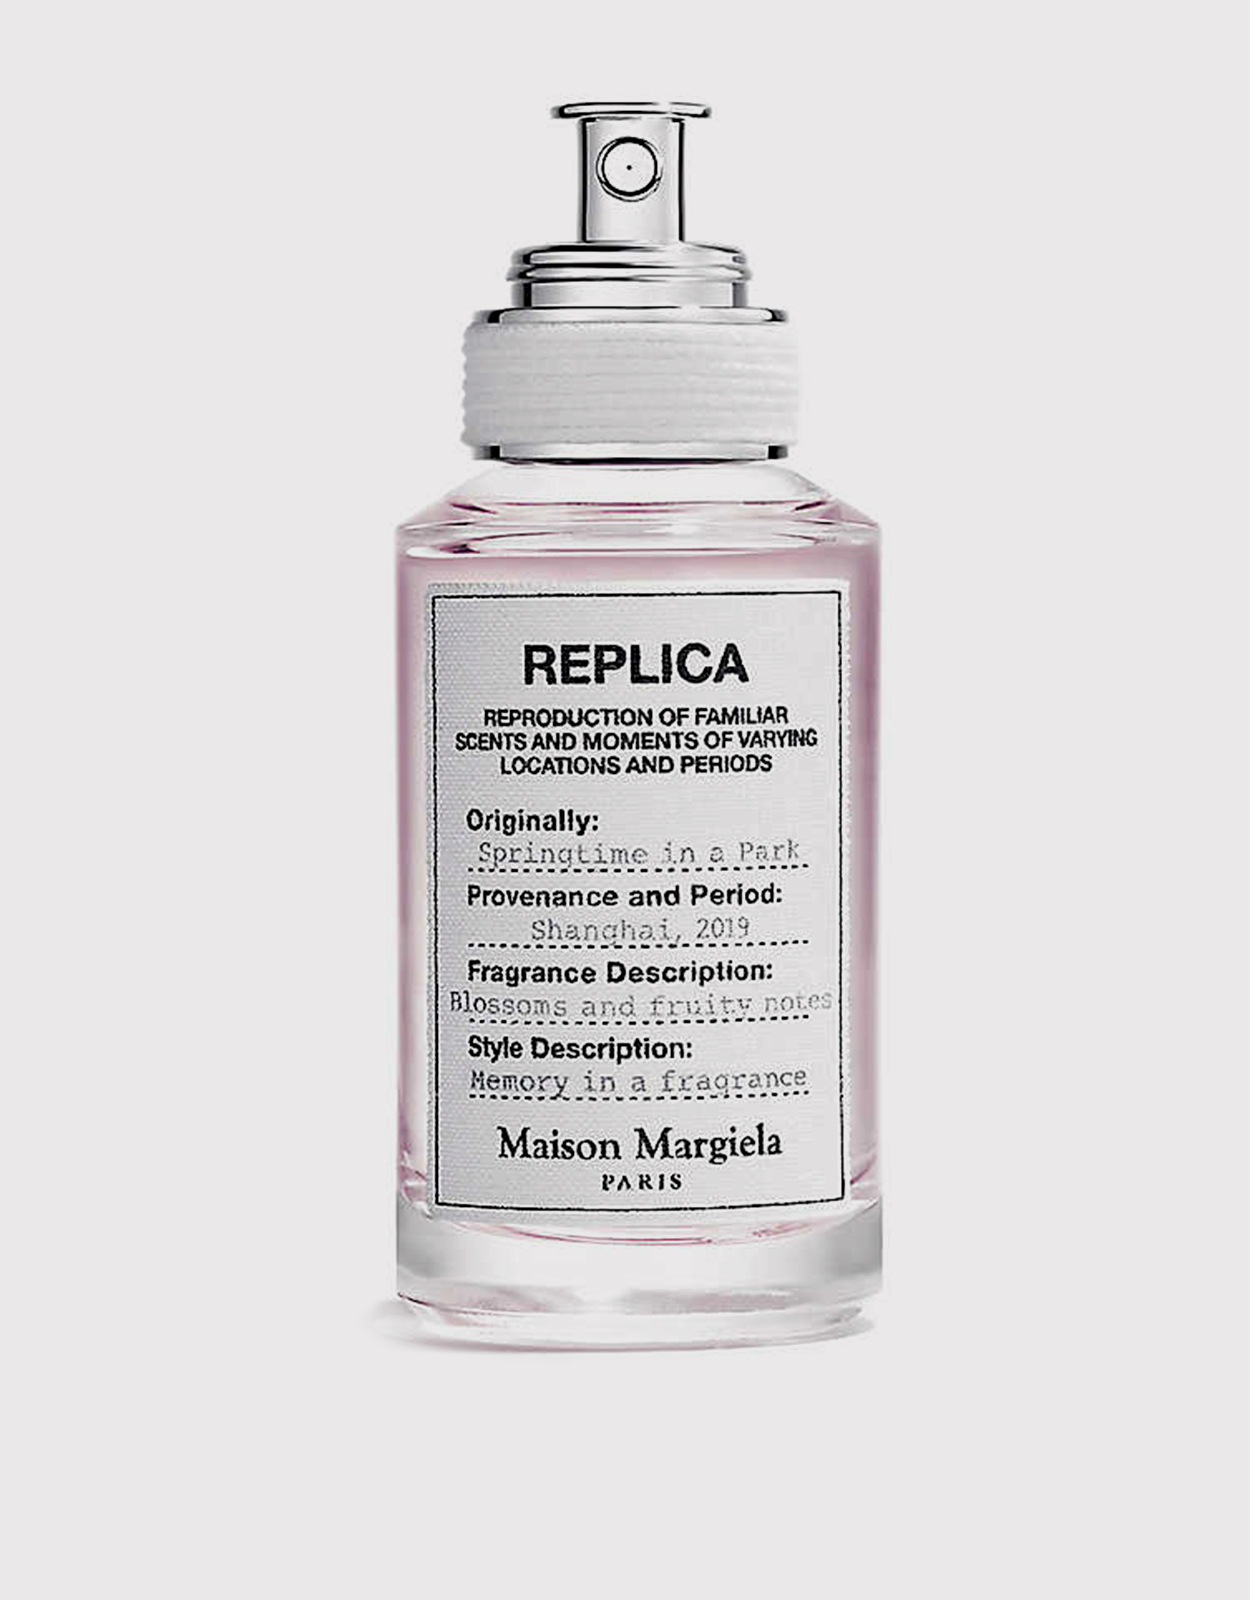 vergeven Verstrooien Vleien Maison Margiela Replica Springtime In A Park Unisex Eau De Toilette 30ml  (Fragrance,Perfume,Unisex) IFCHIC.COM